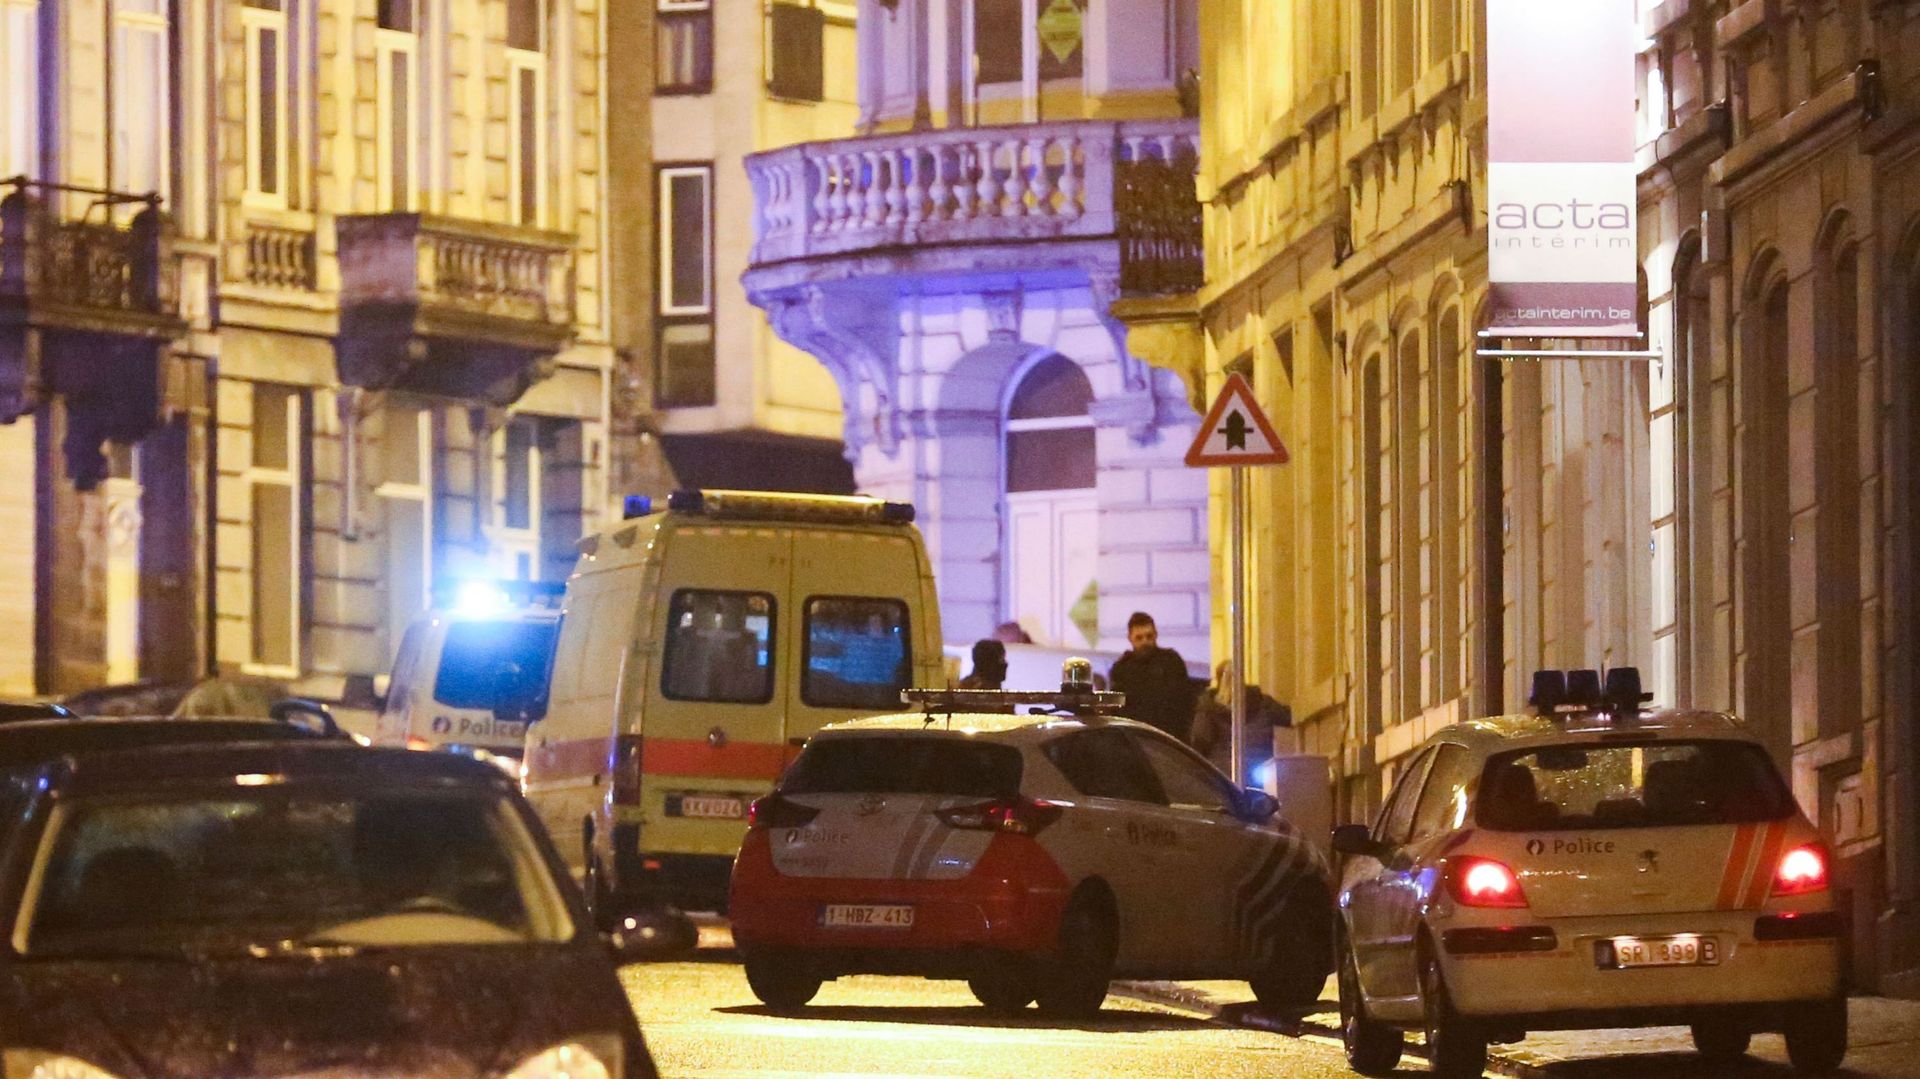 En janvier 2015, les unités spéciales donnaient l'assaut à une planque à Verviers